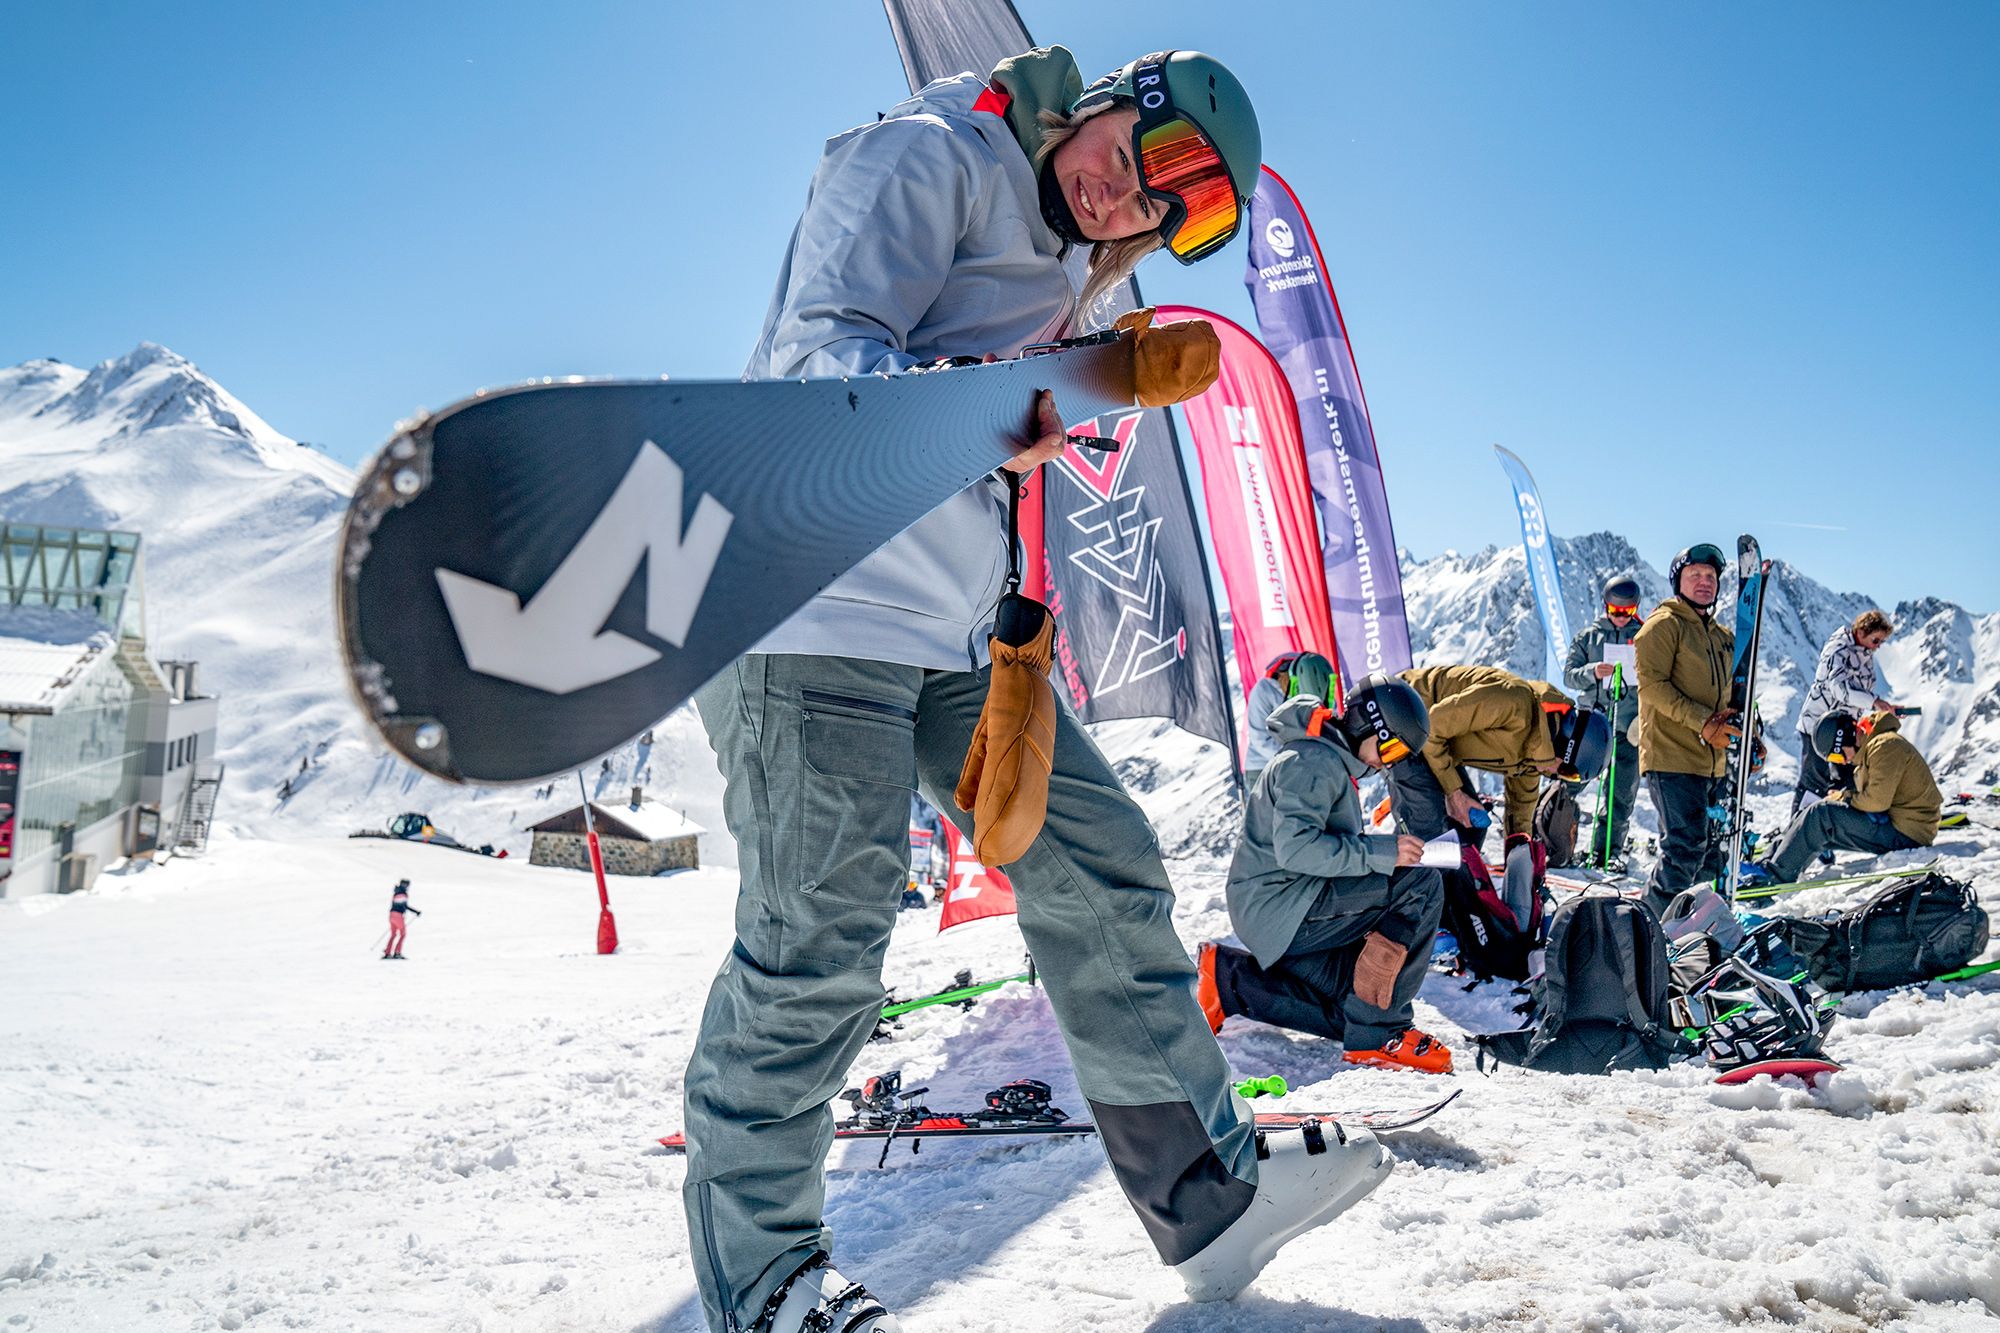 Skitest: zijn beste allmountain van 2022? - Wintersport weblog